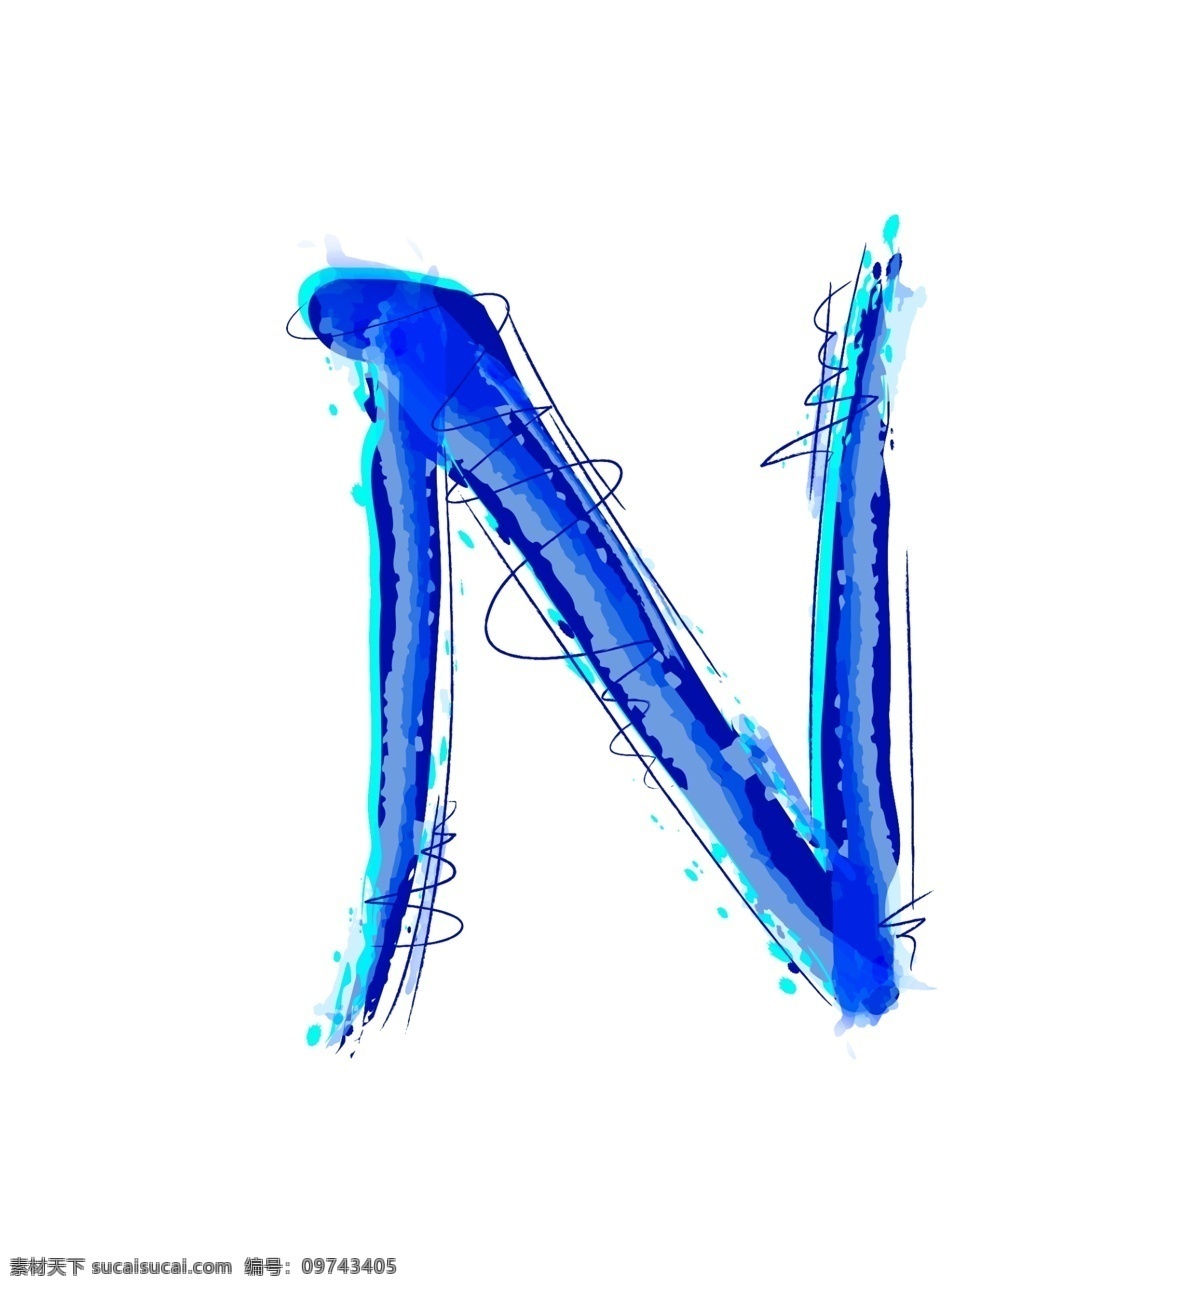 大写字母 n 模板 视频